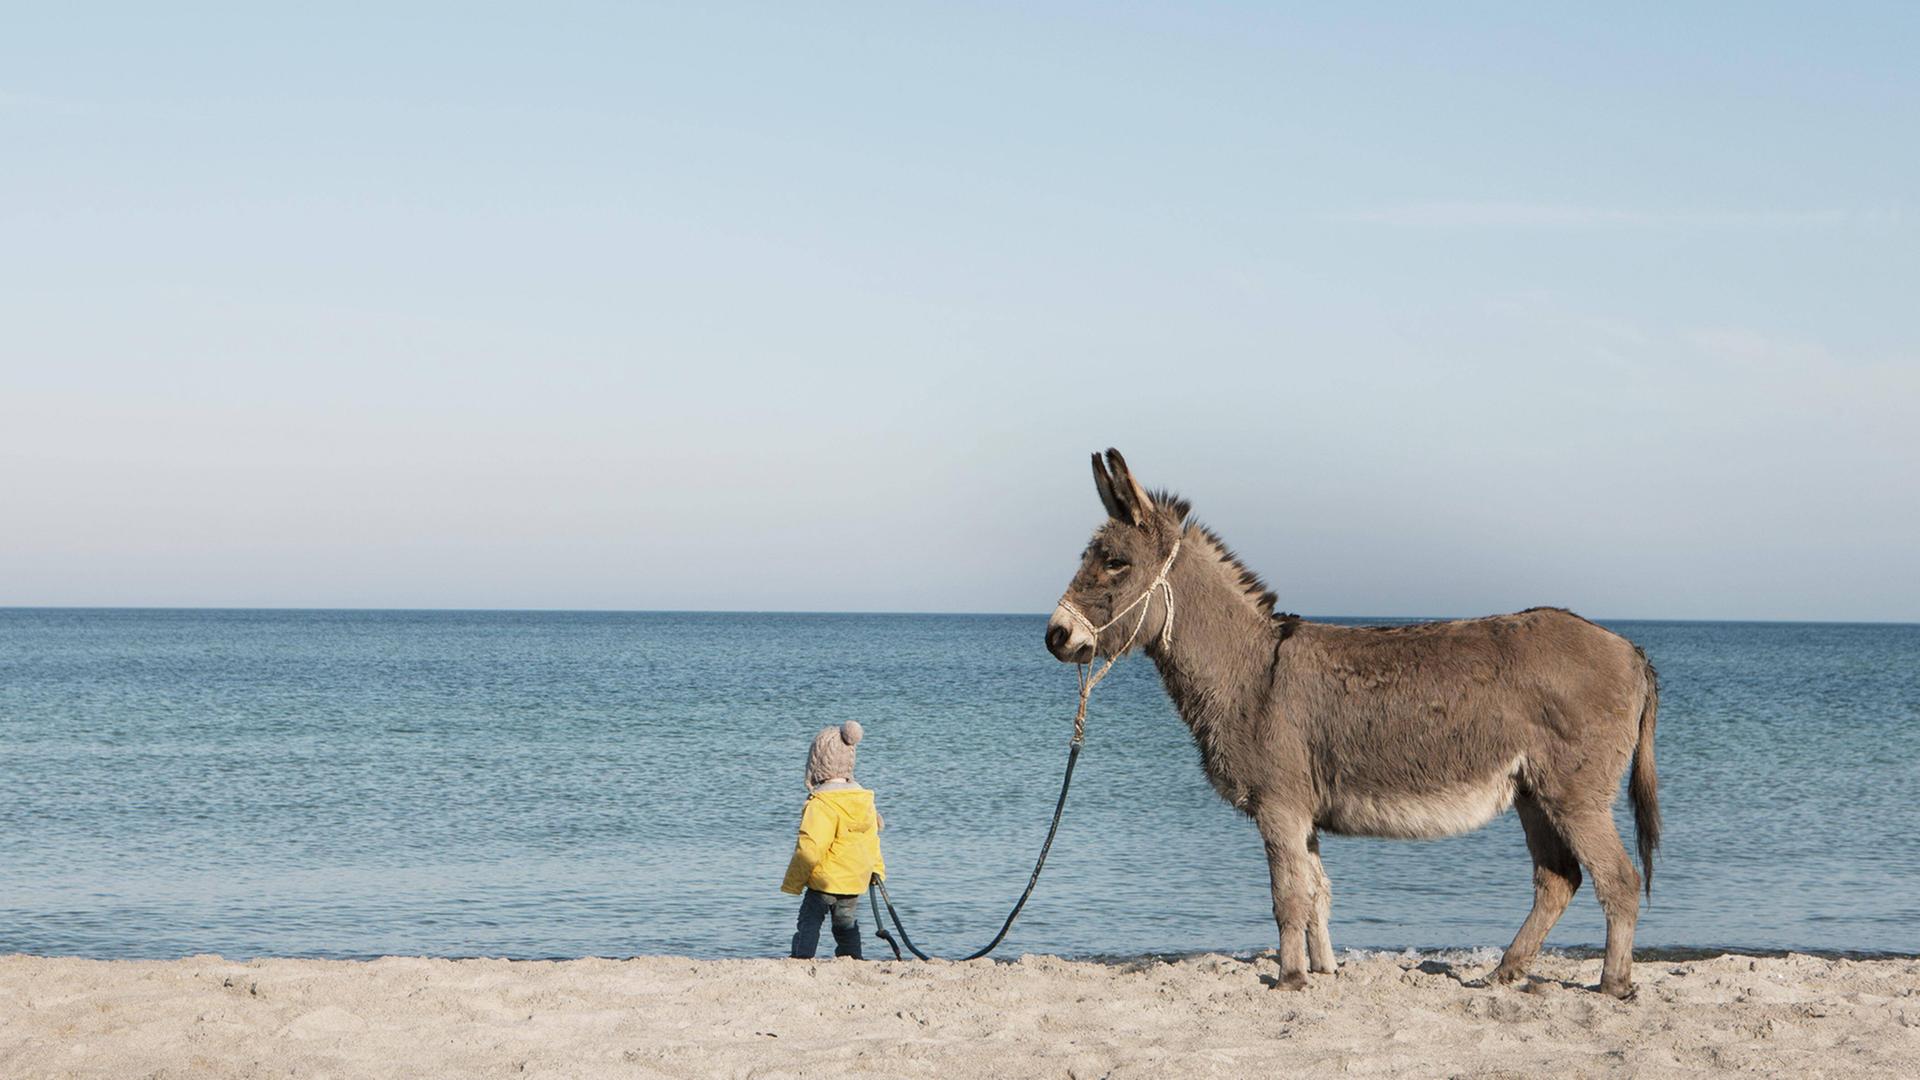 Ein Esel steht an einem Sandstrand vor blauem Meer: Ein kleines Kind mit Mütze und gelber Jacke hält ihn dabei am Zügel.